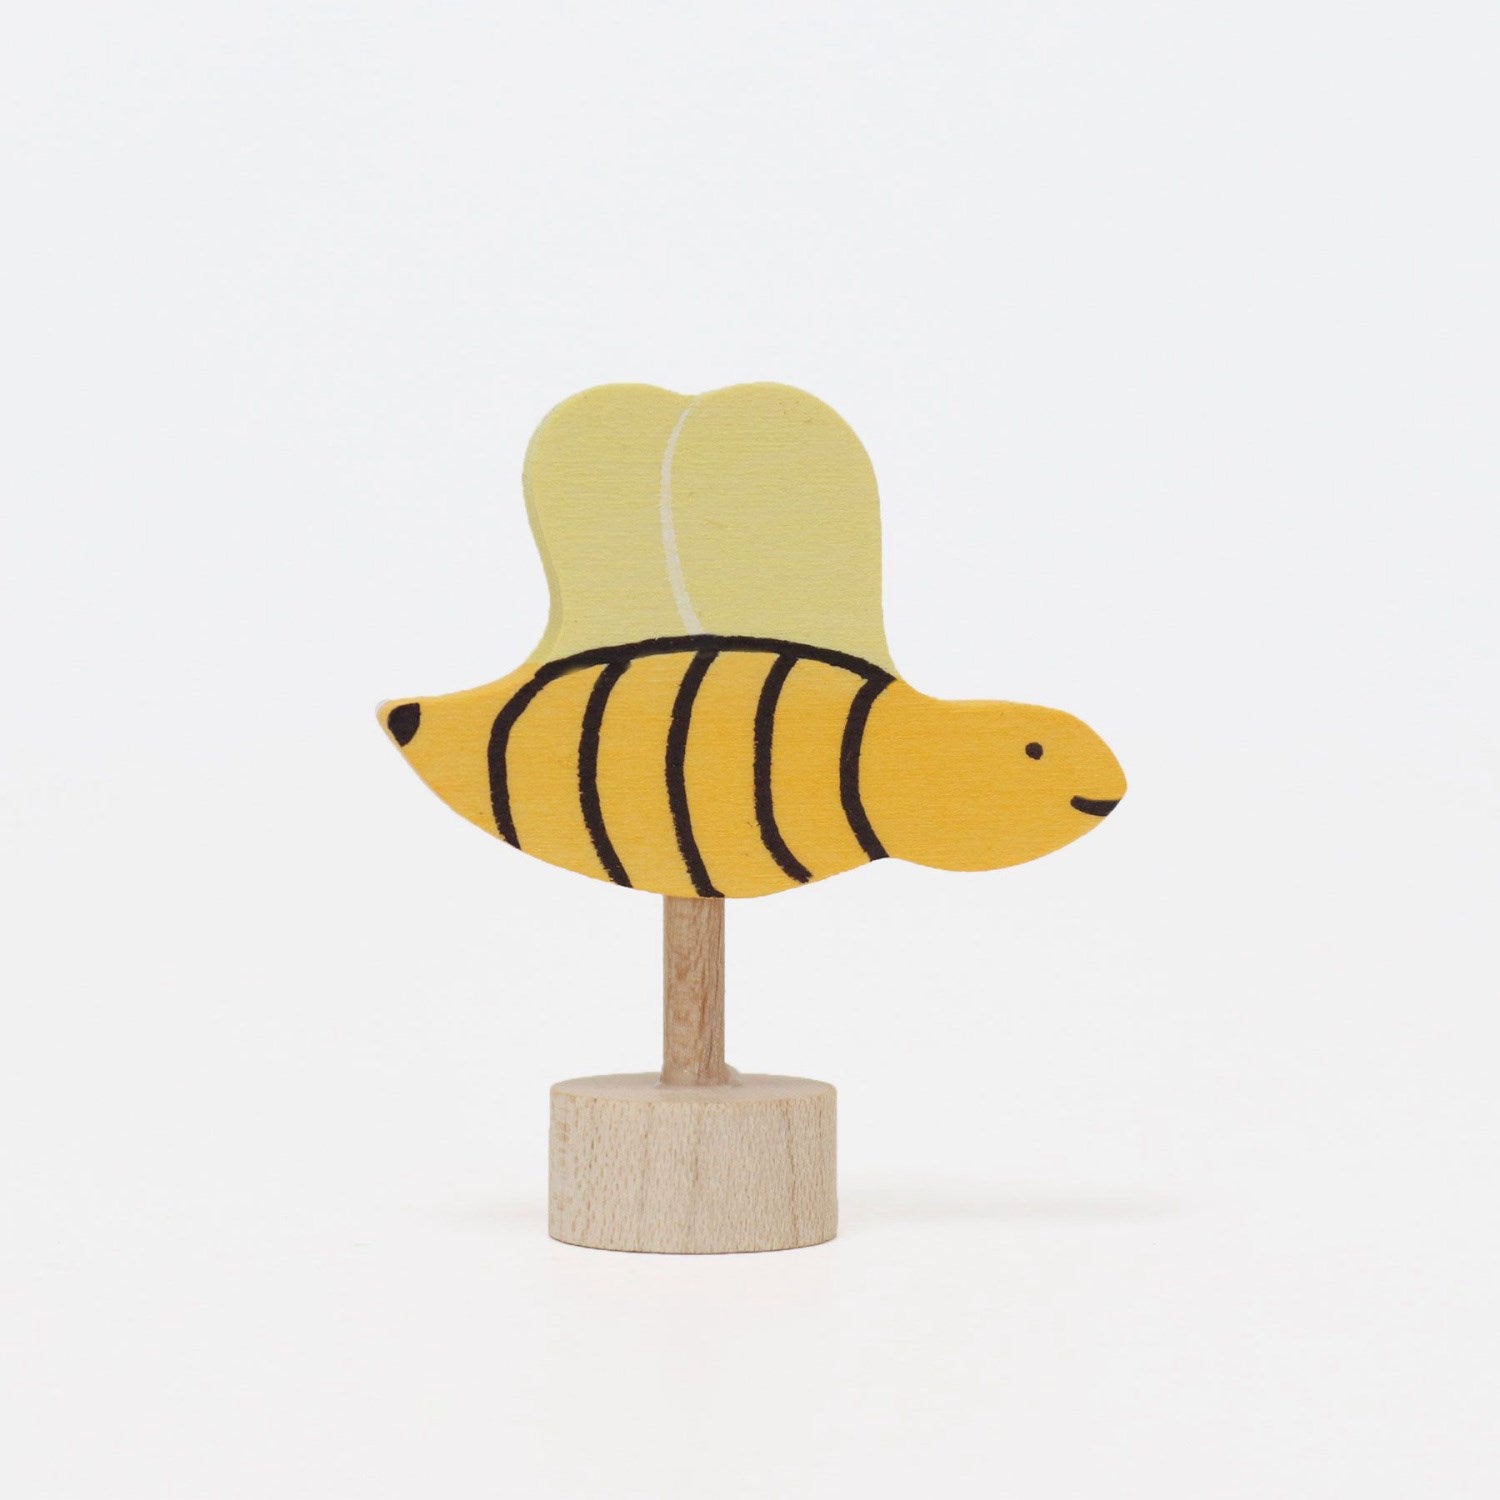 GRIMM´S Decorative Figure Bee